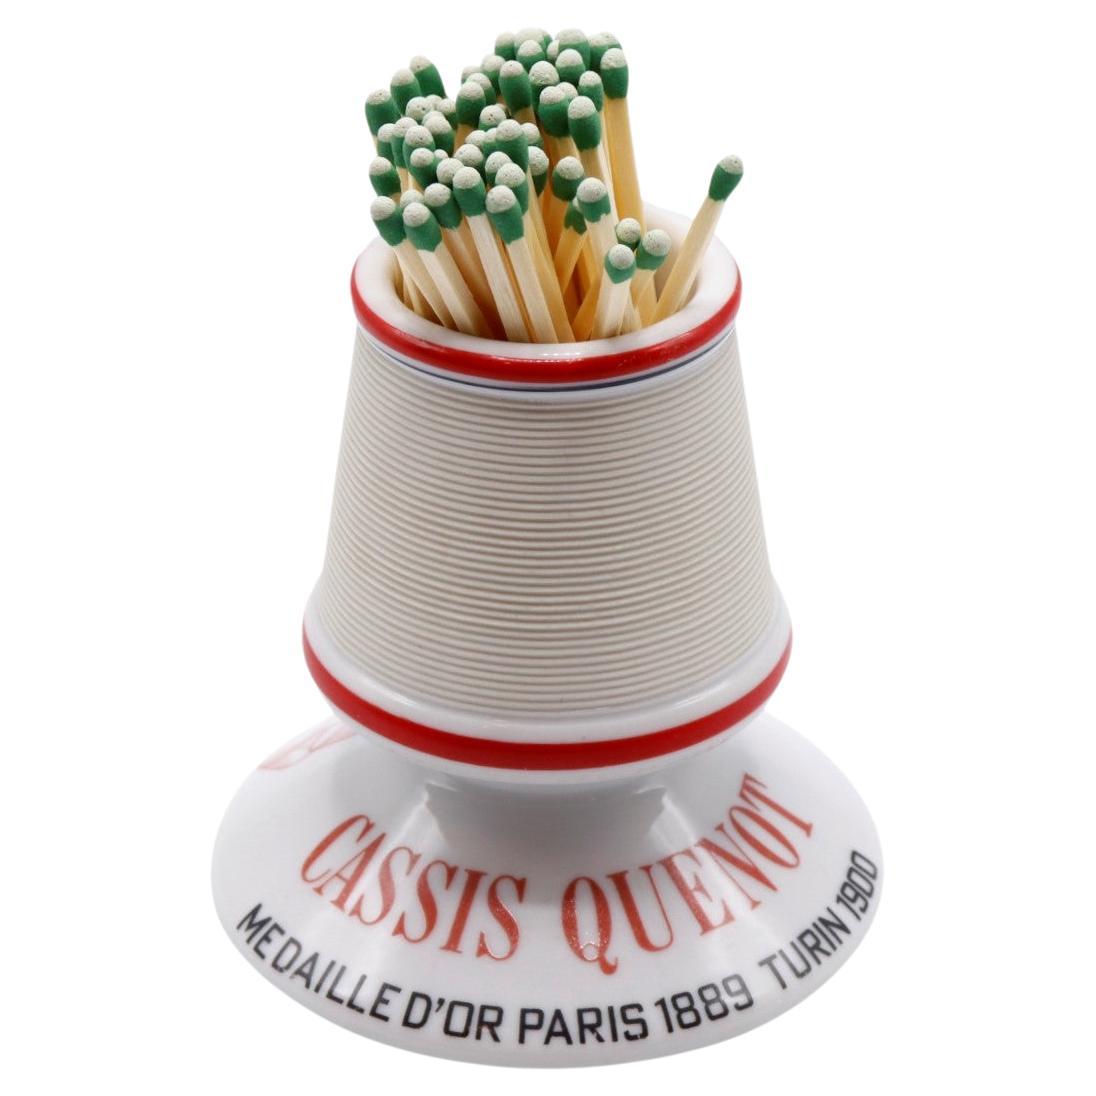 Französischer Cassis Quenot-Streichholzhalter aus Keramik